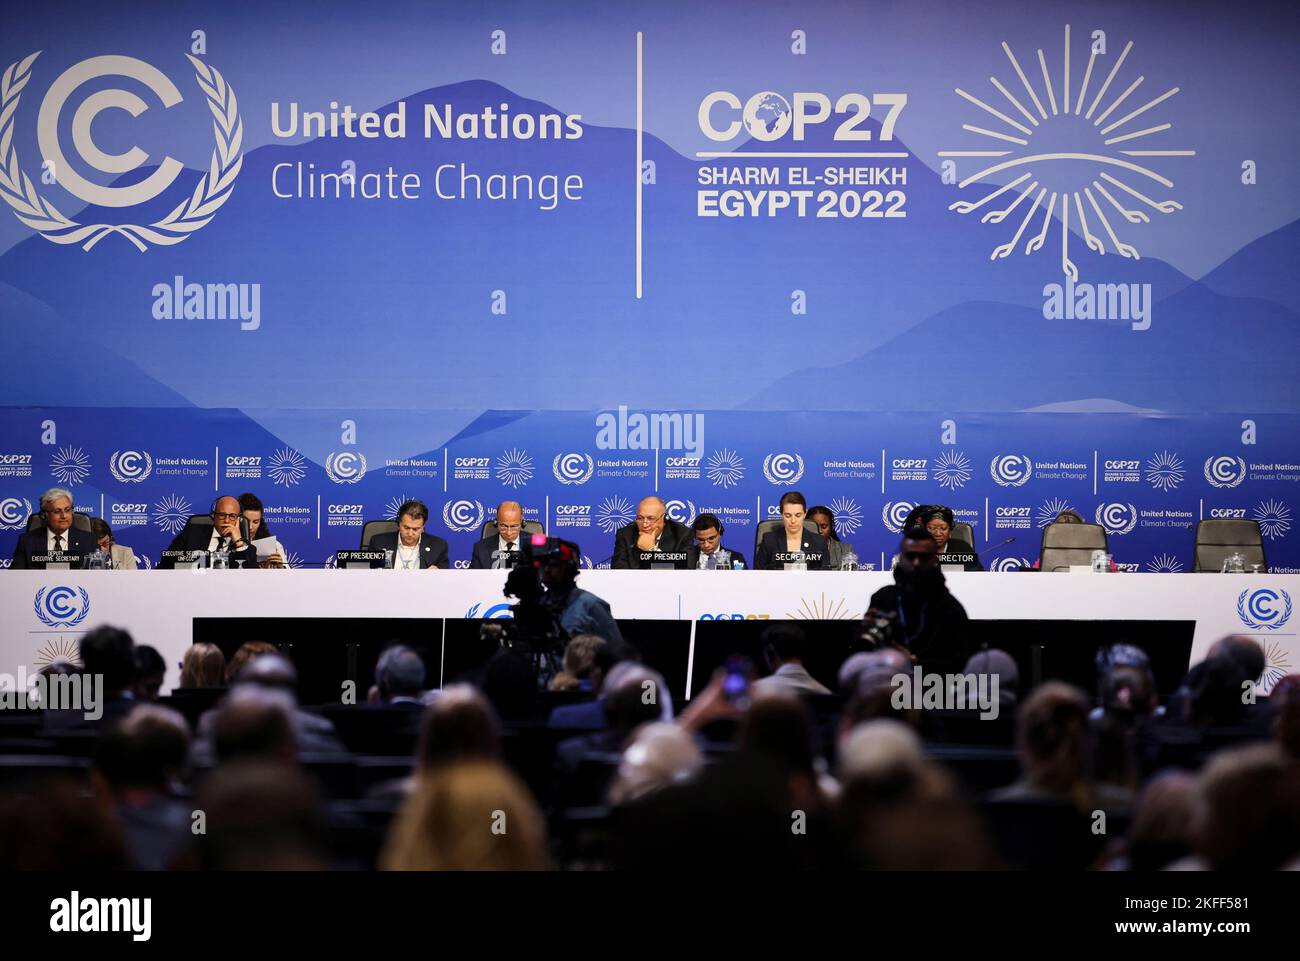 Sameh Shoukry, ministro egipcio de Asuntos Exteriores y presidente del COP27 de Egipto, asiste a una sesión informal de balance durante la cumbre climática del COP27, en Sharm el-Sheikh, Egipto, el 18 de noviembre de 2022. REUTERS/Mohamed Abd El Ghany Foto de stock